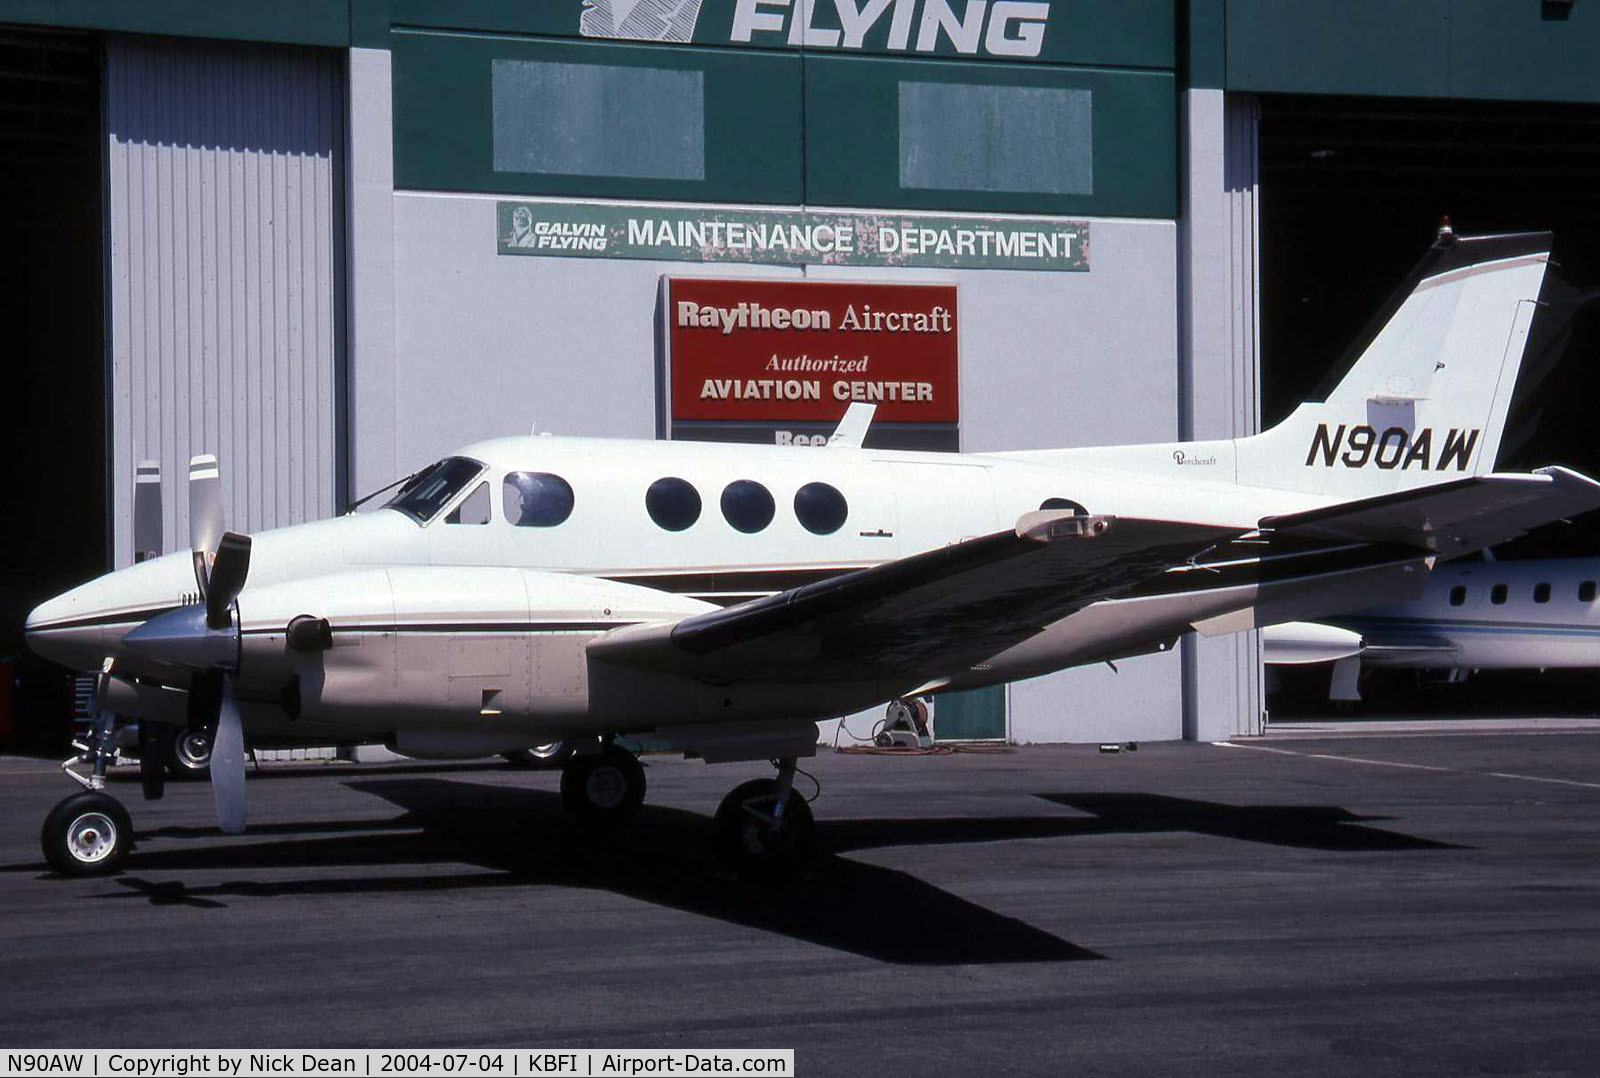 N90AW, 1976 Beech C90 King Air C/N LJ-697, This King Air is parked outside a partially open hangar